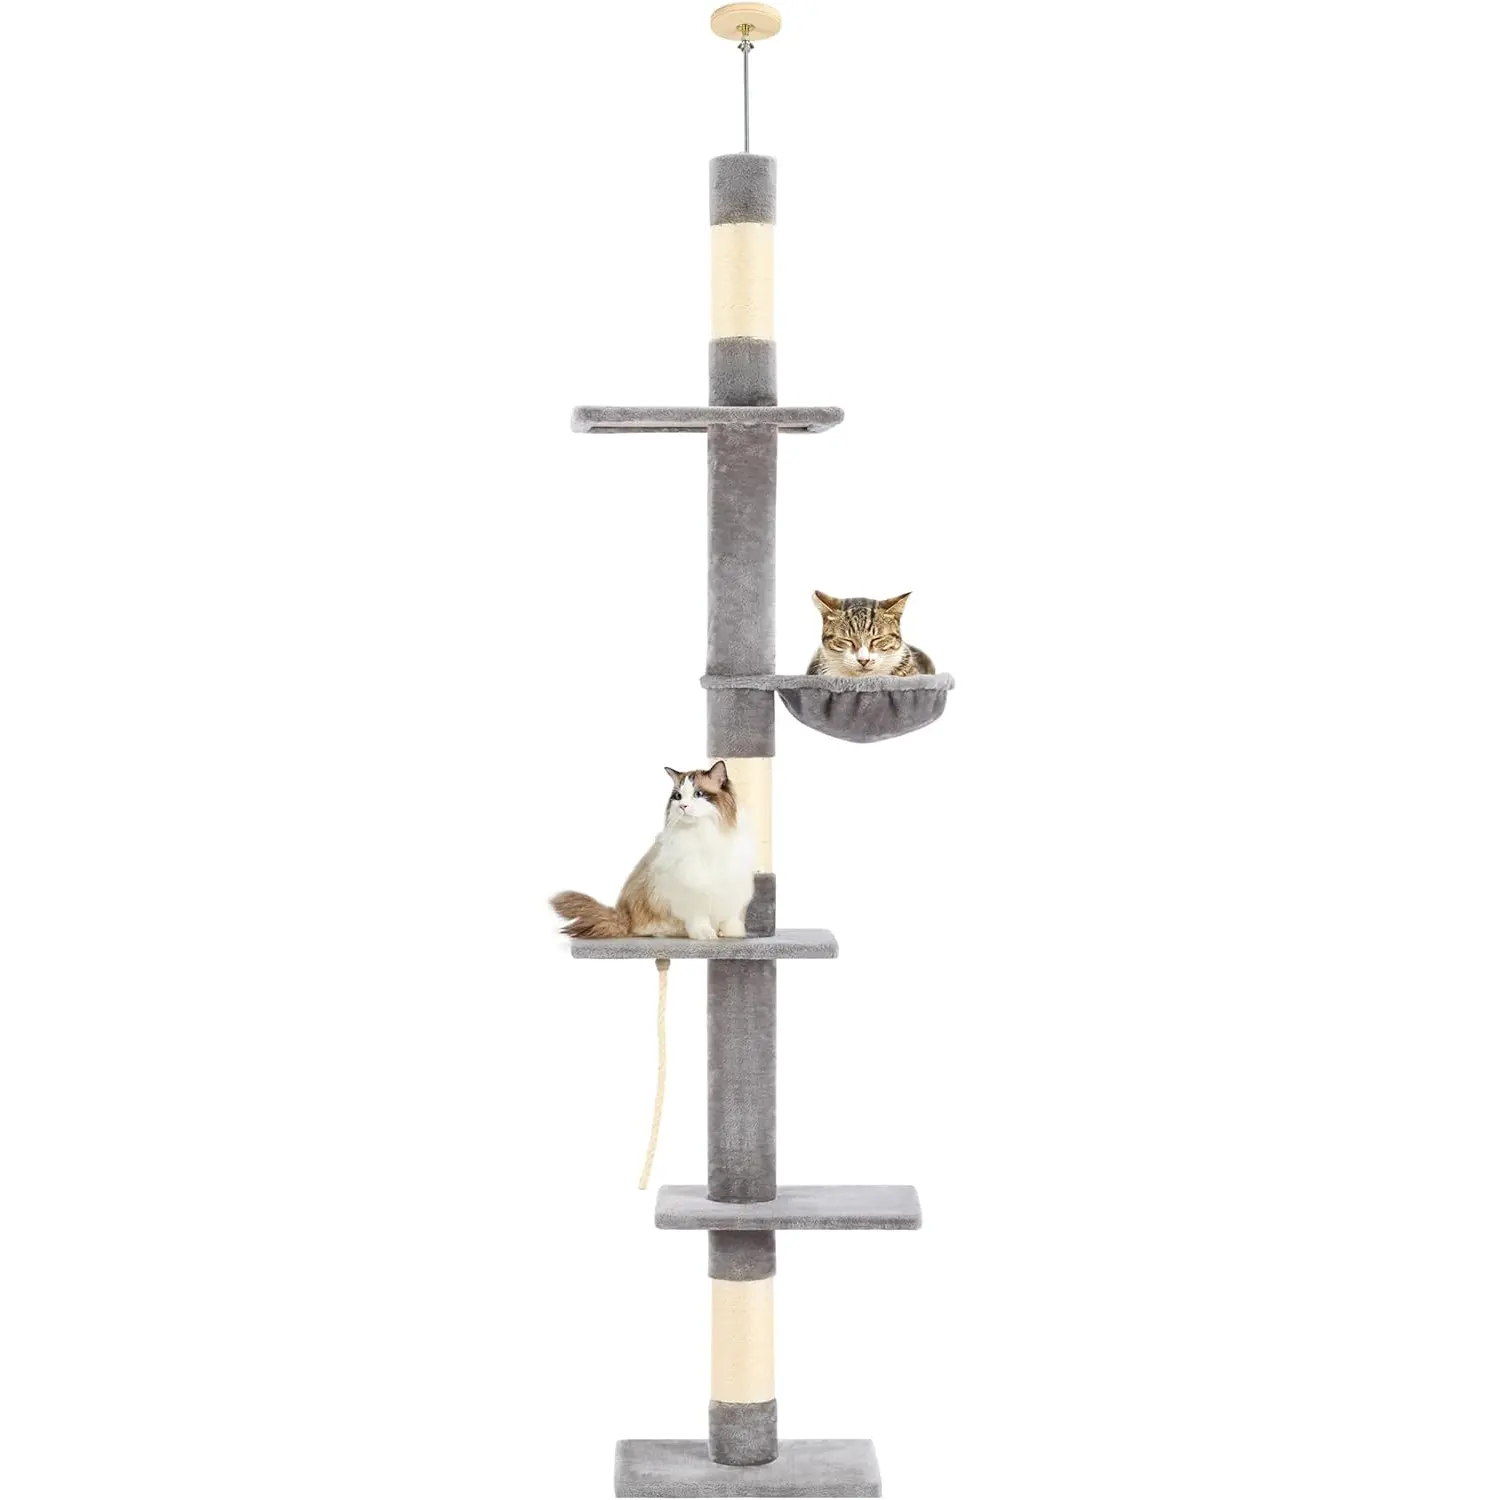 أرجوحة شبكية مريحة على شكل برج للقطط حوامل للخدش من Sisal منتجات تفاعلية داخلية مستلزمات حيوانات أليفة ألعاب شجرة القطط